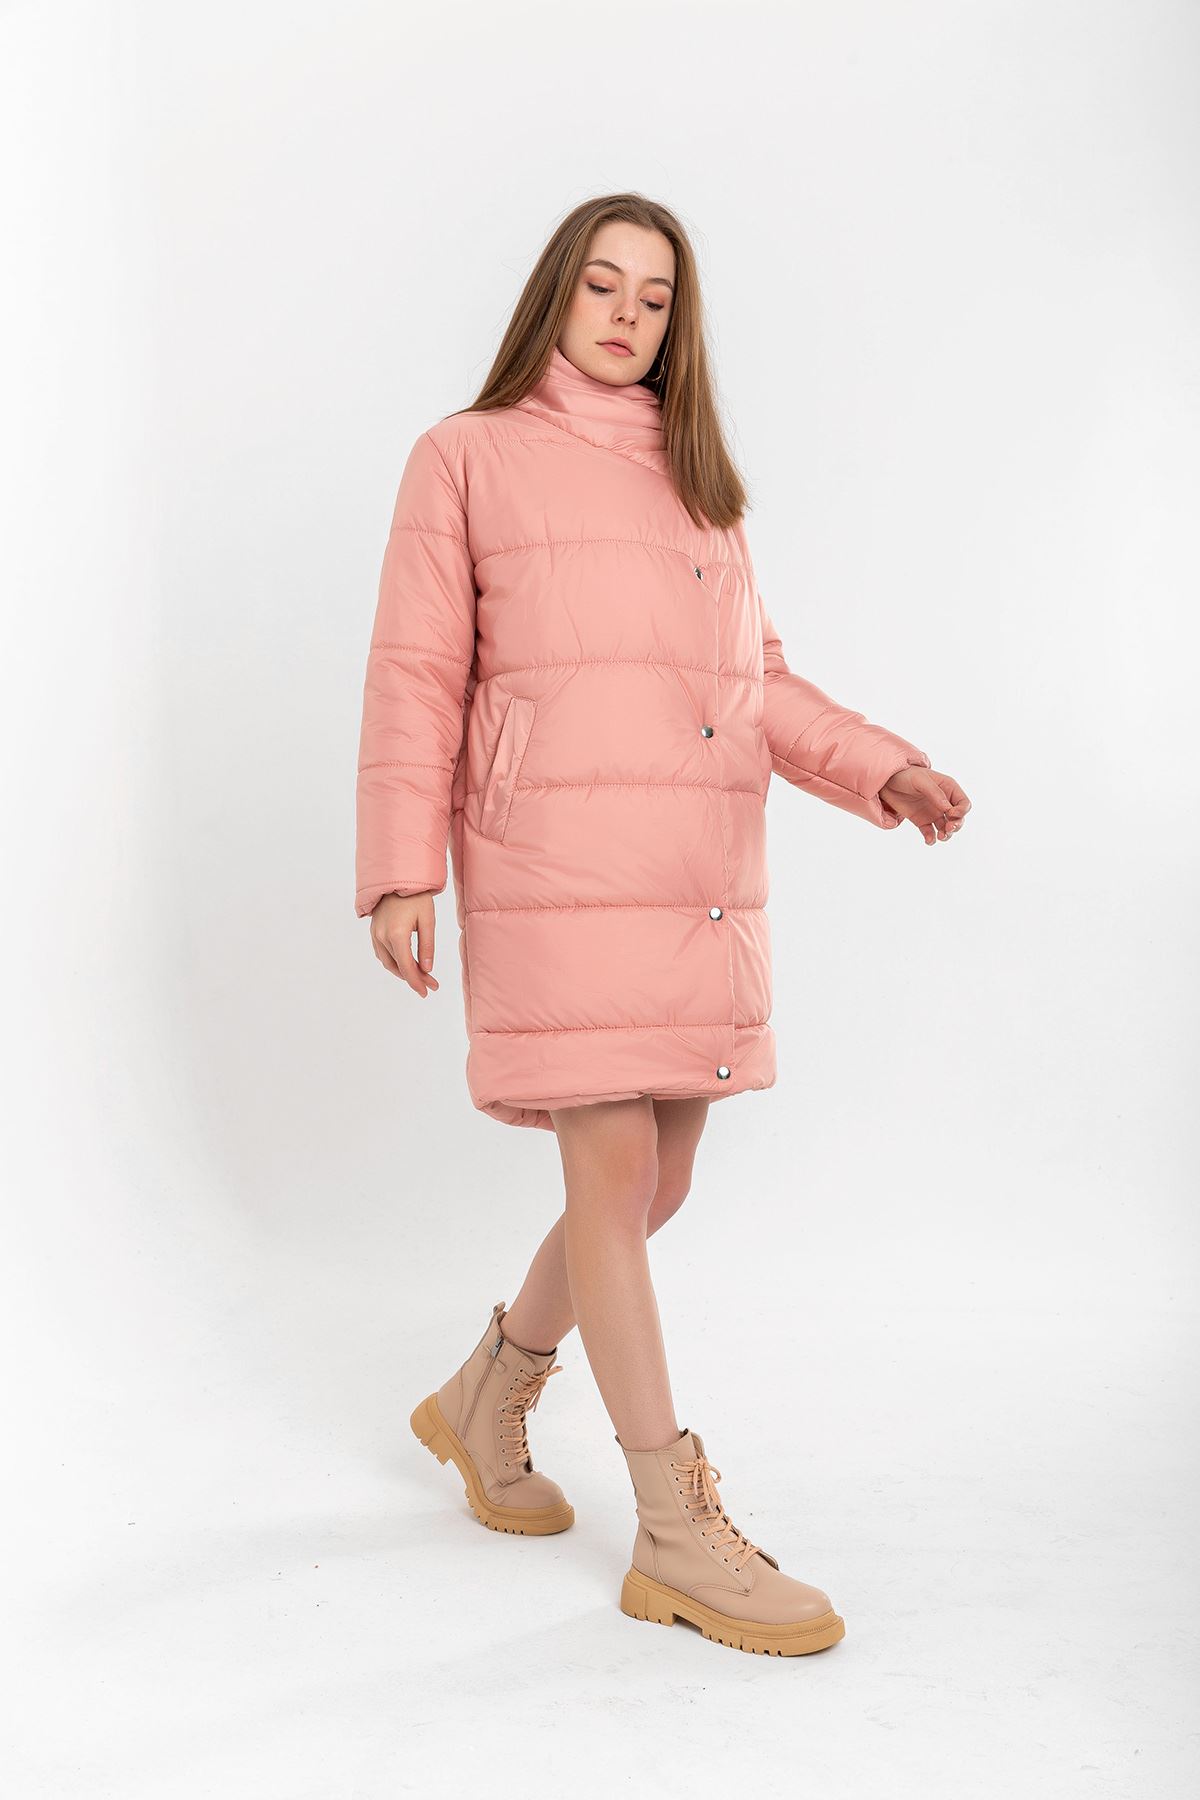 A wholesale clothing model wears Coat - Powder Pink, Turkish wholesale Coat of Kaktus Moda